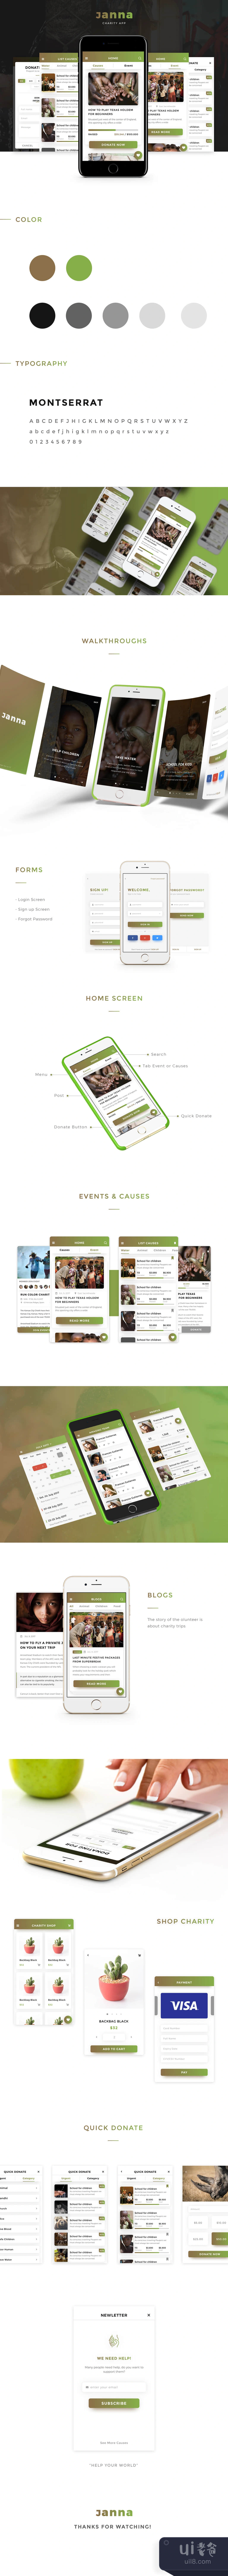 雅娜慈善移动UI套件 (Janna Charity Mobile UI Kit)插图1